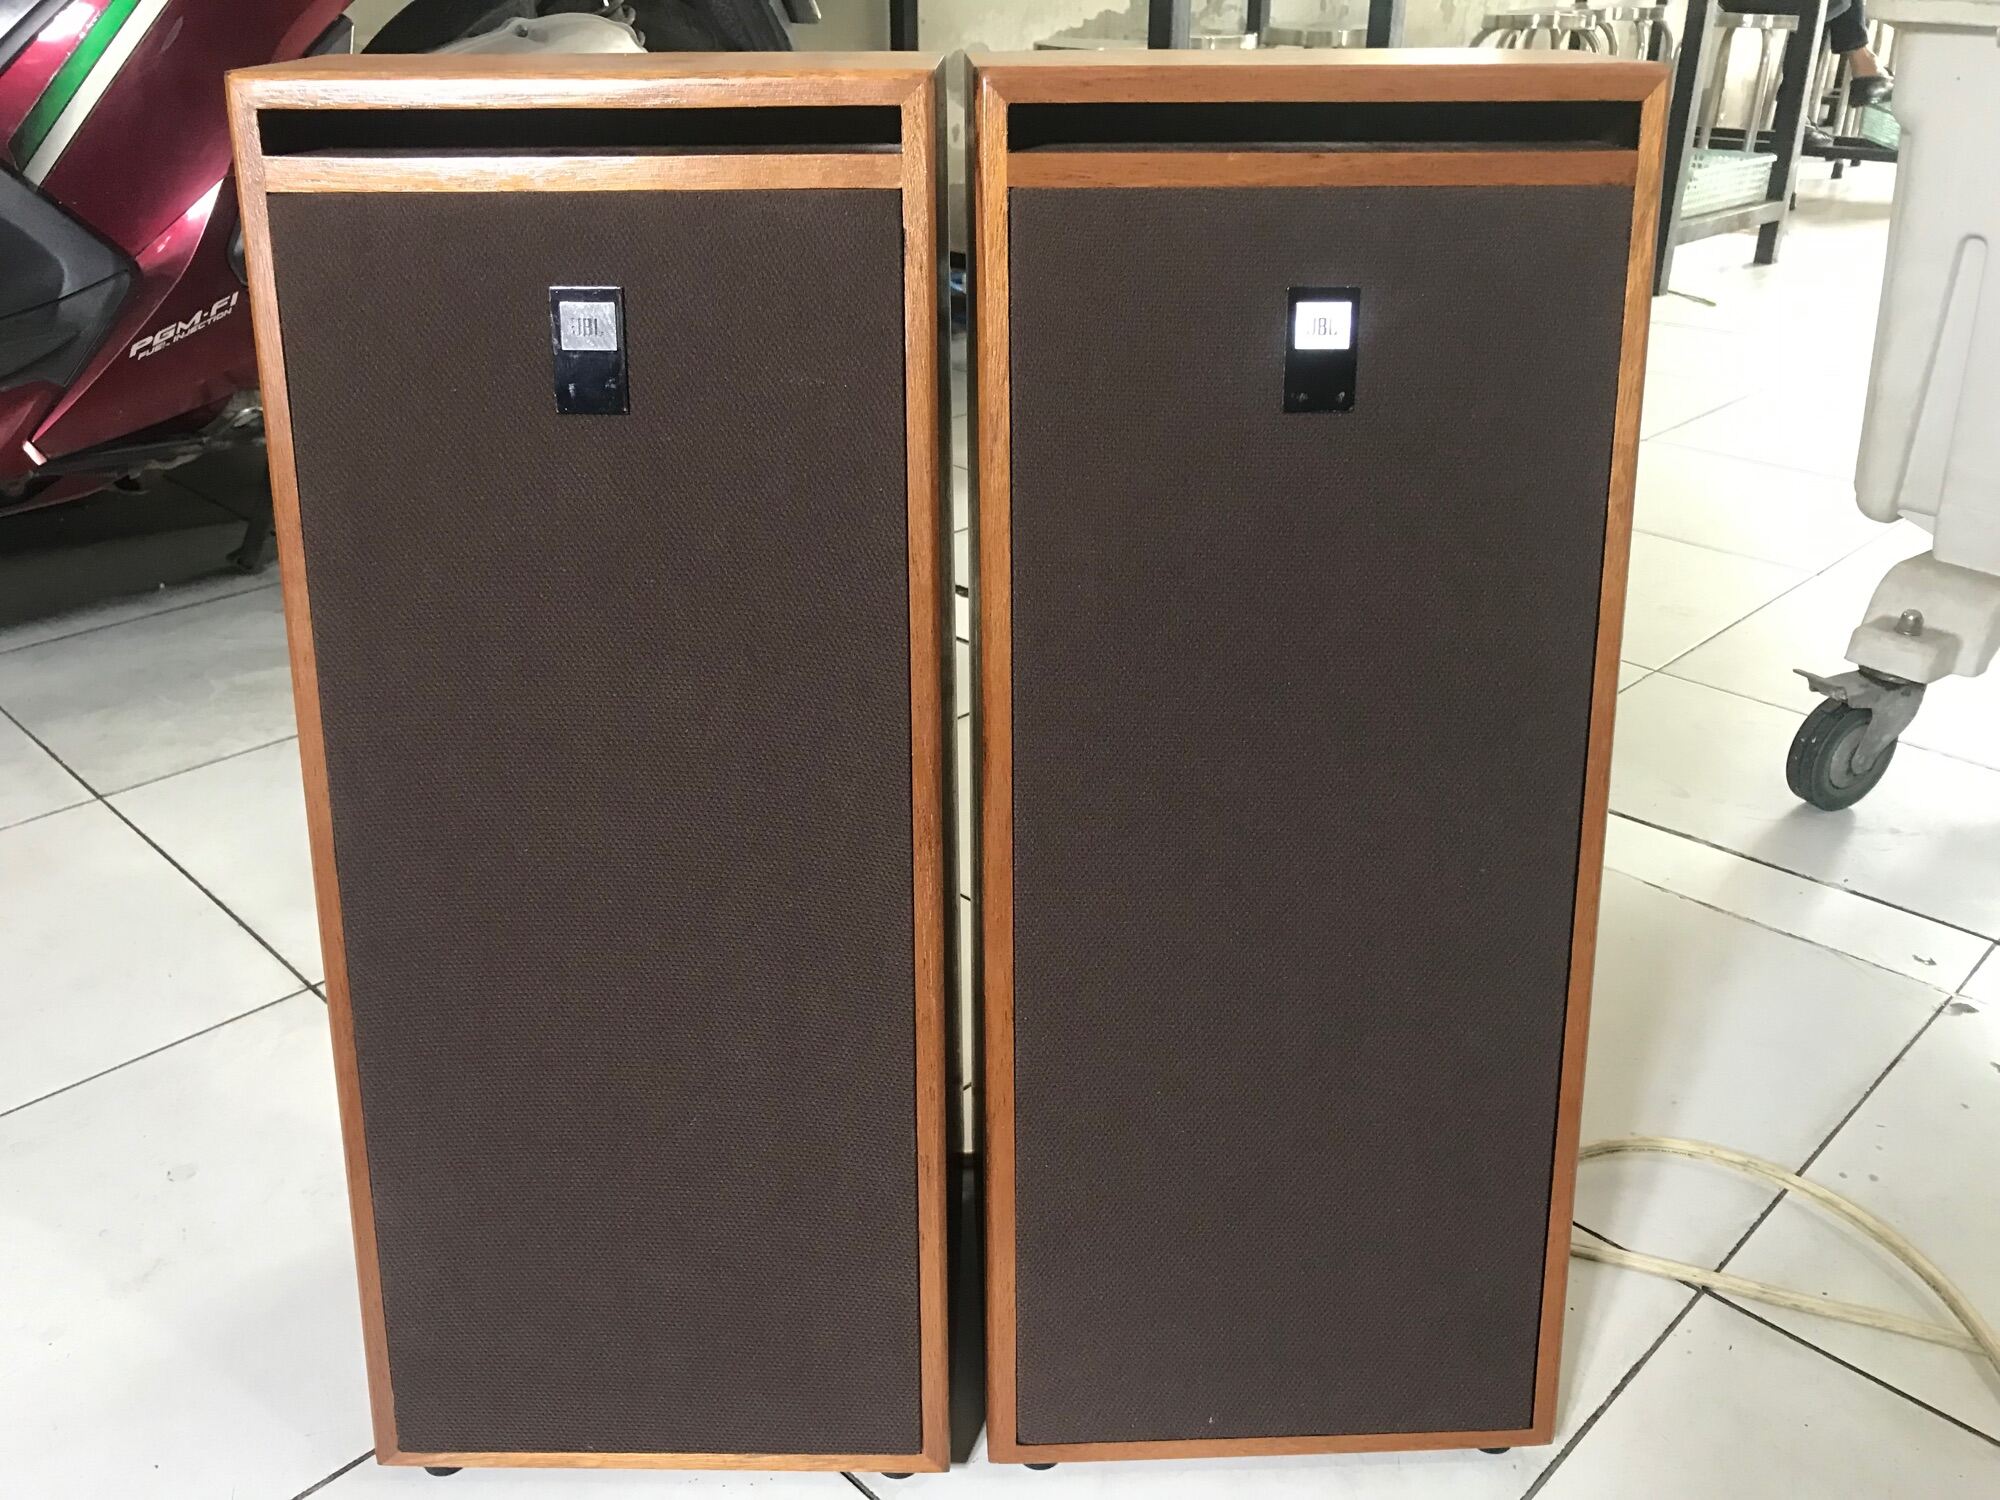 Cặp Loa JBL S-390II CS-450w , 2 Loa bass 20cm & 2 Treble giấy 10cm.